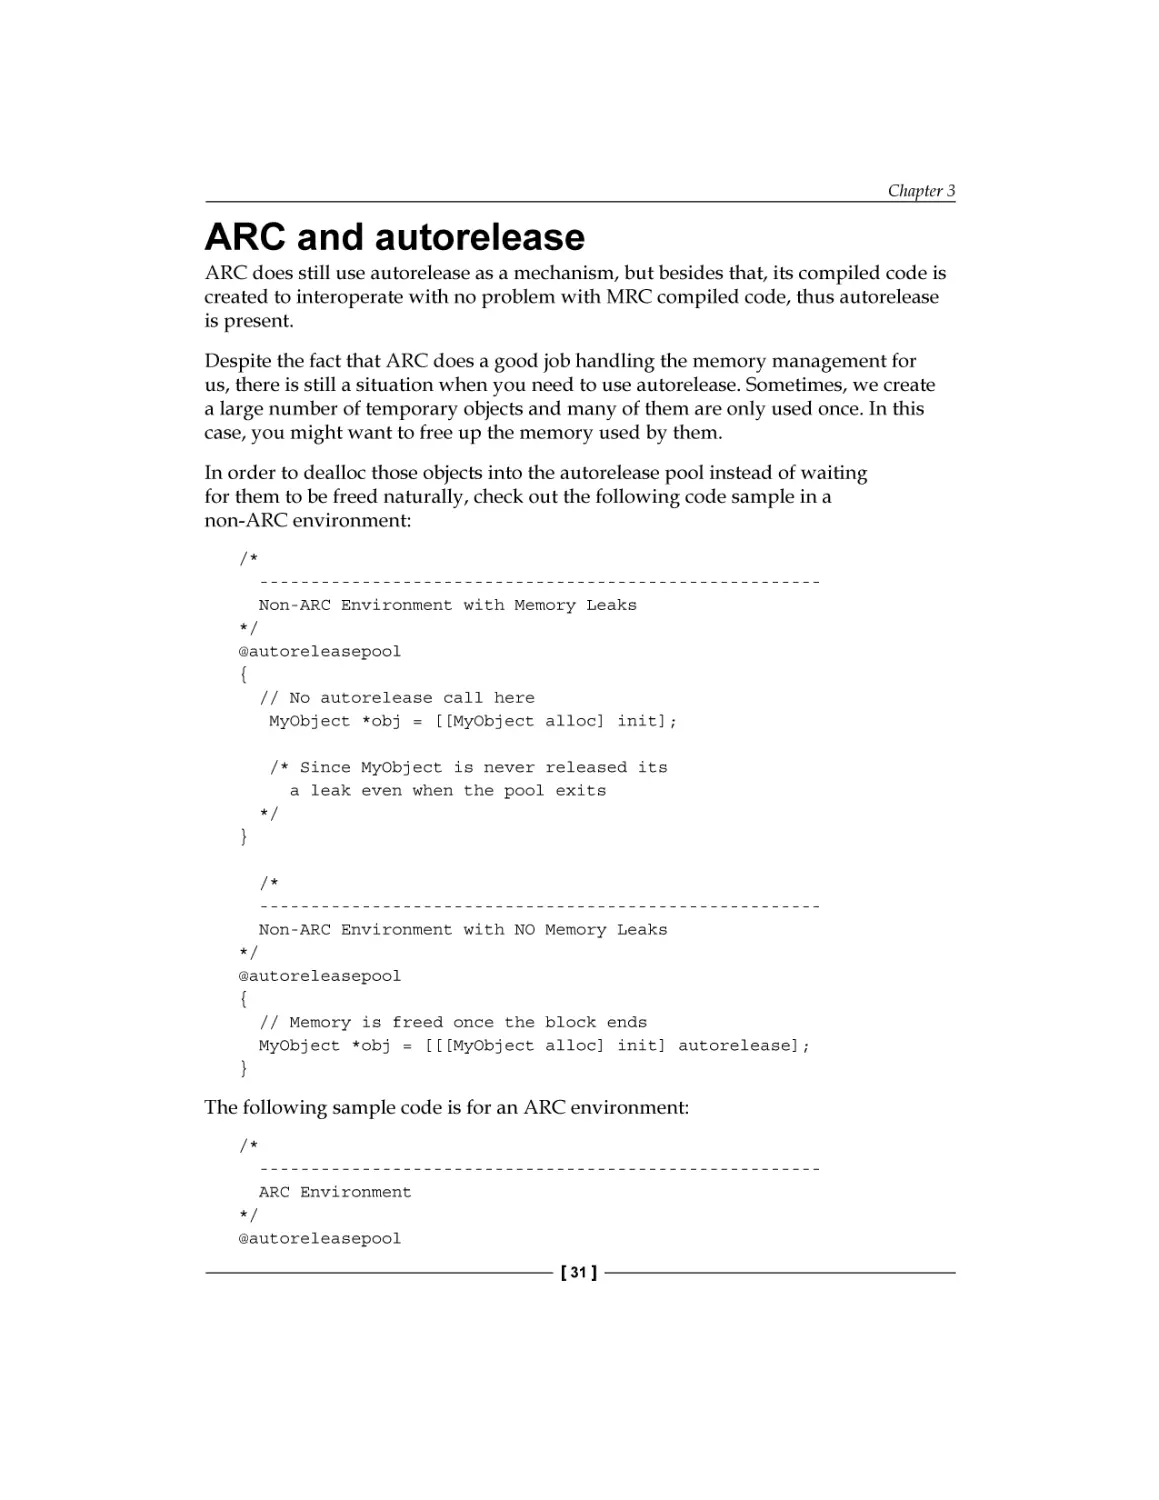 ARC and autorelease